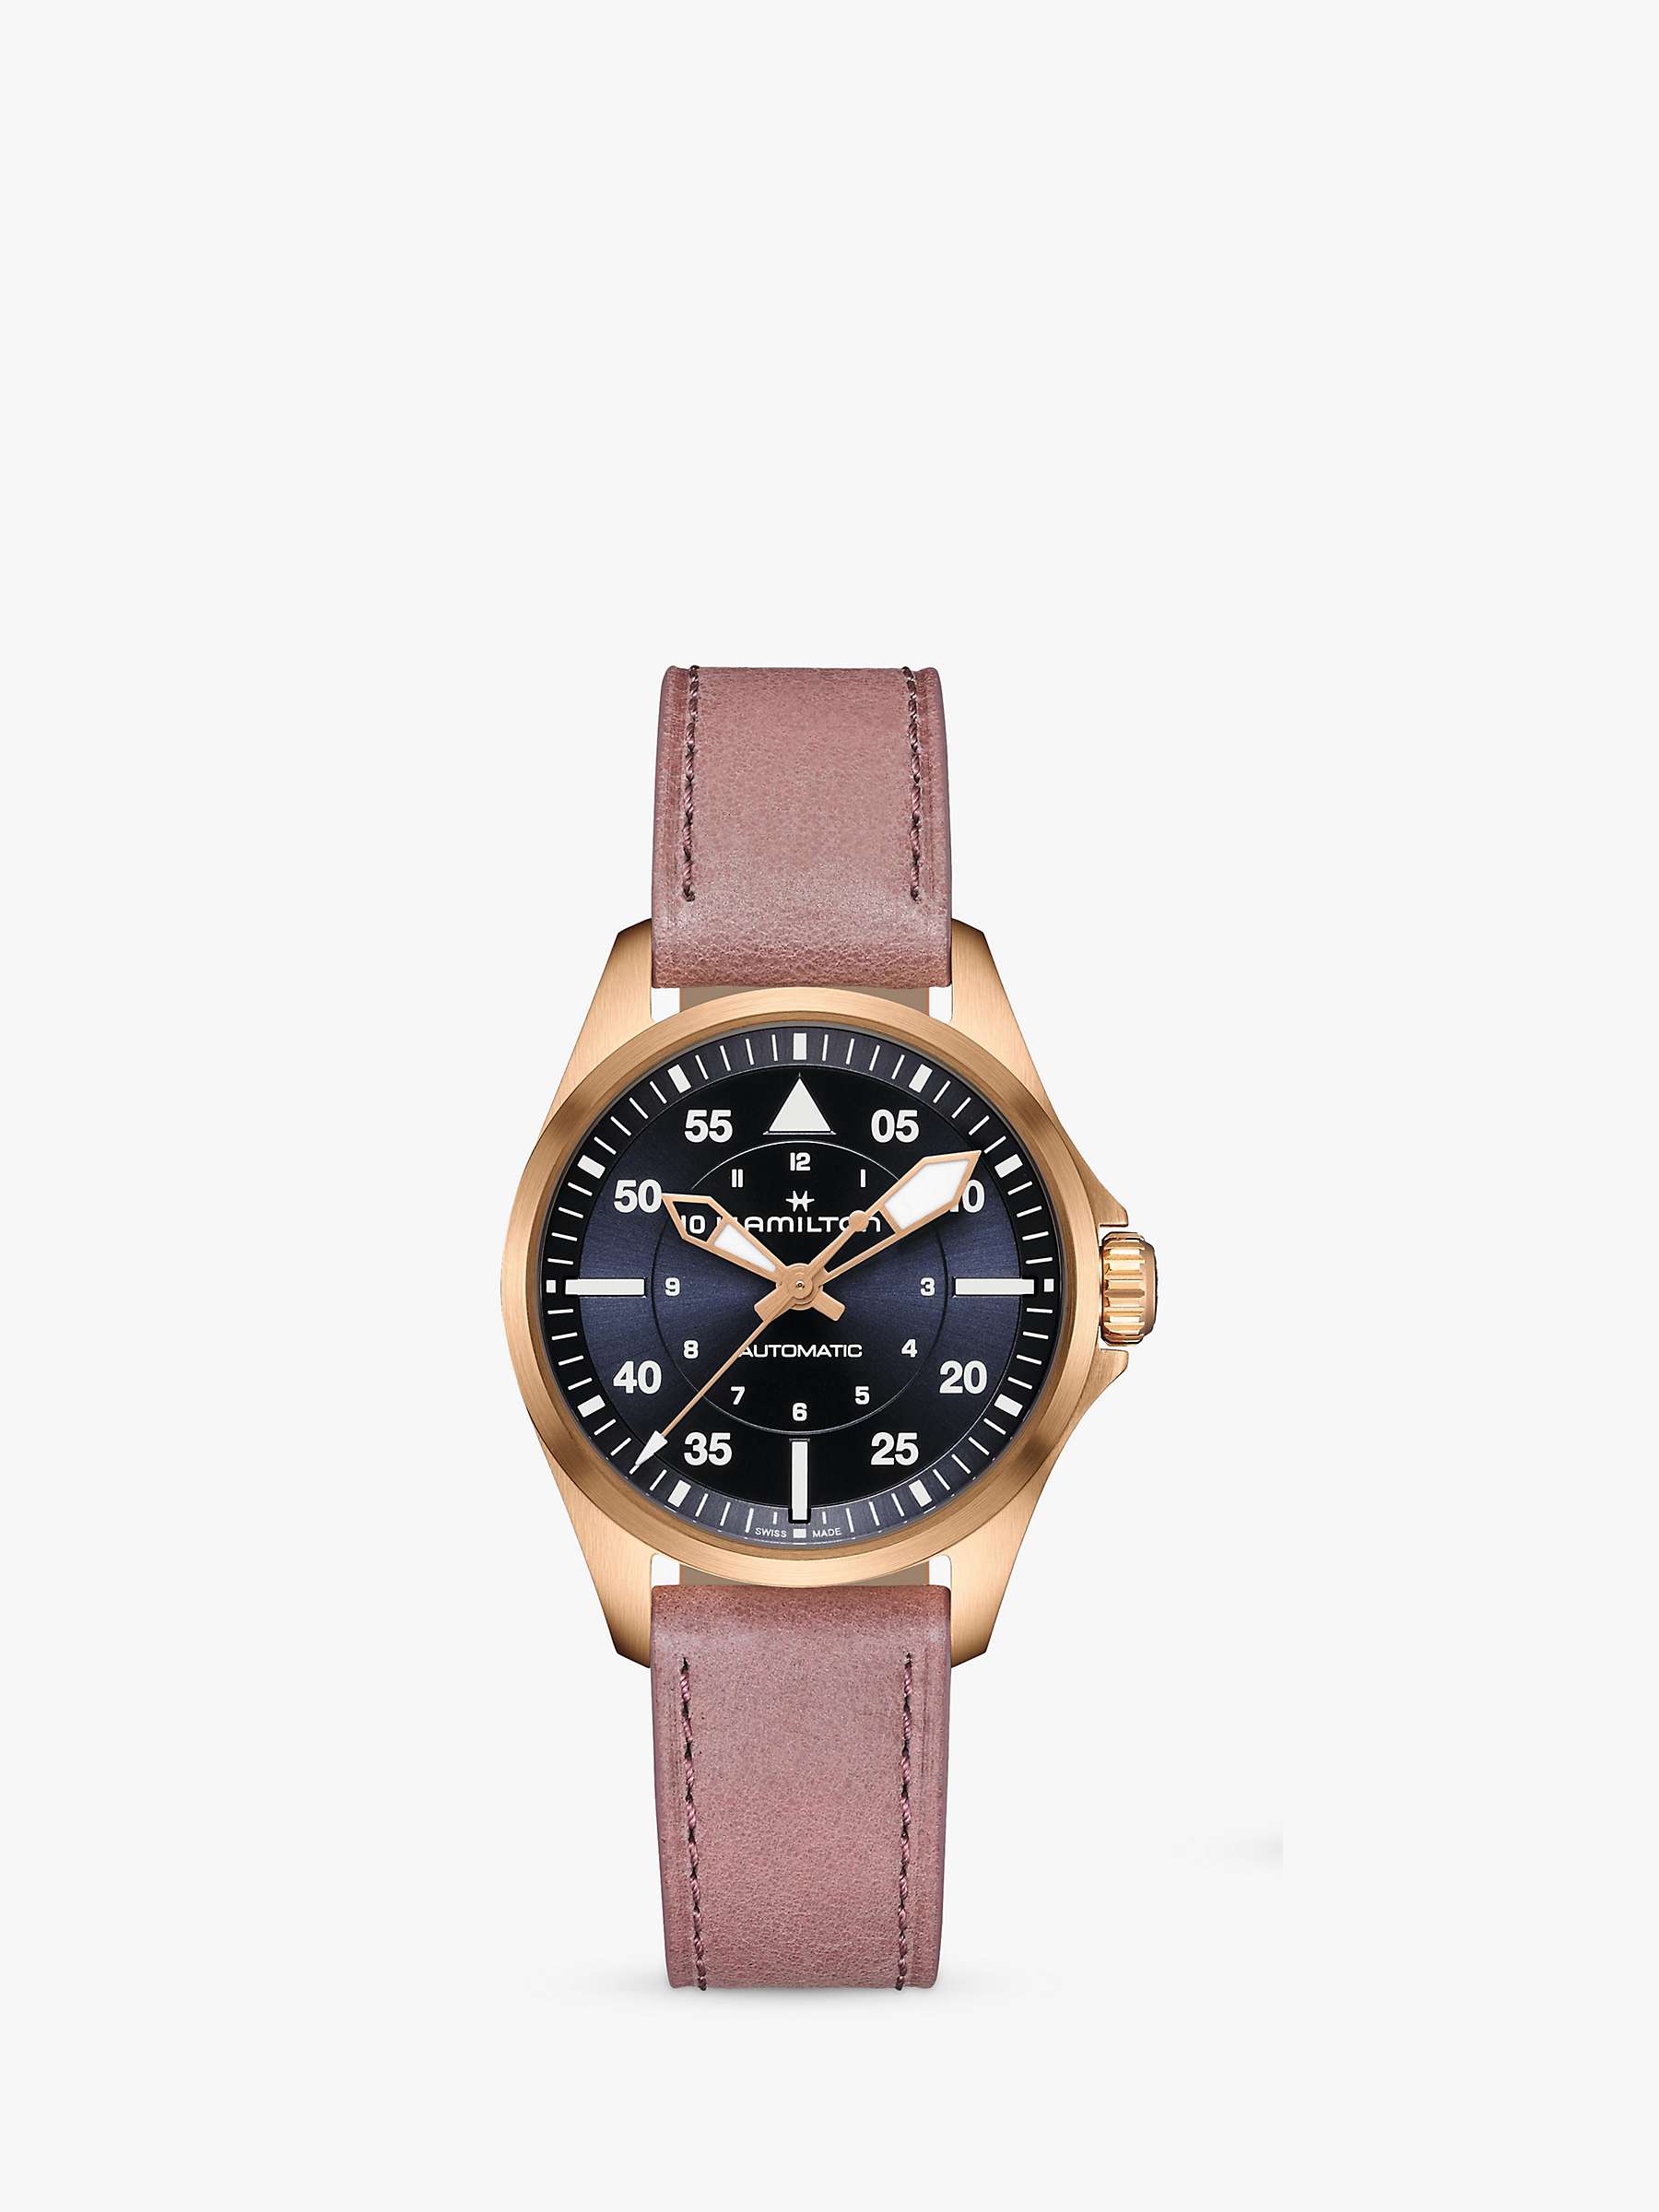 Buy Hamilton Women's Khaki Pilot Automatic Leather Strap Watch Online at johnlewis.com